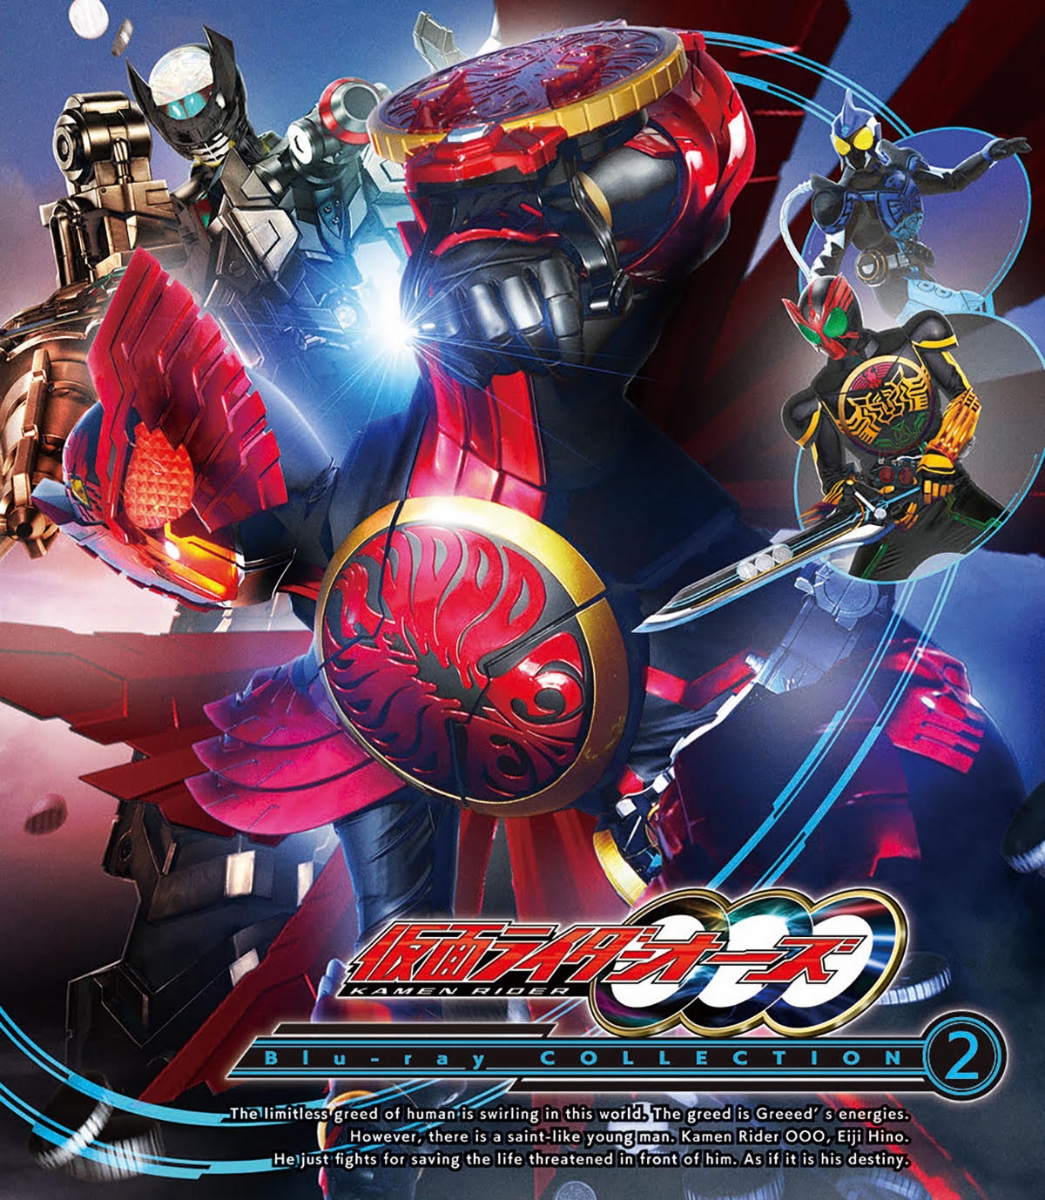 楽天ブックス: 仮面ライダーOOO(オーズ) Blu-ray COLLECTION 2